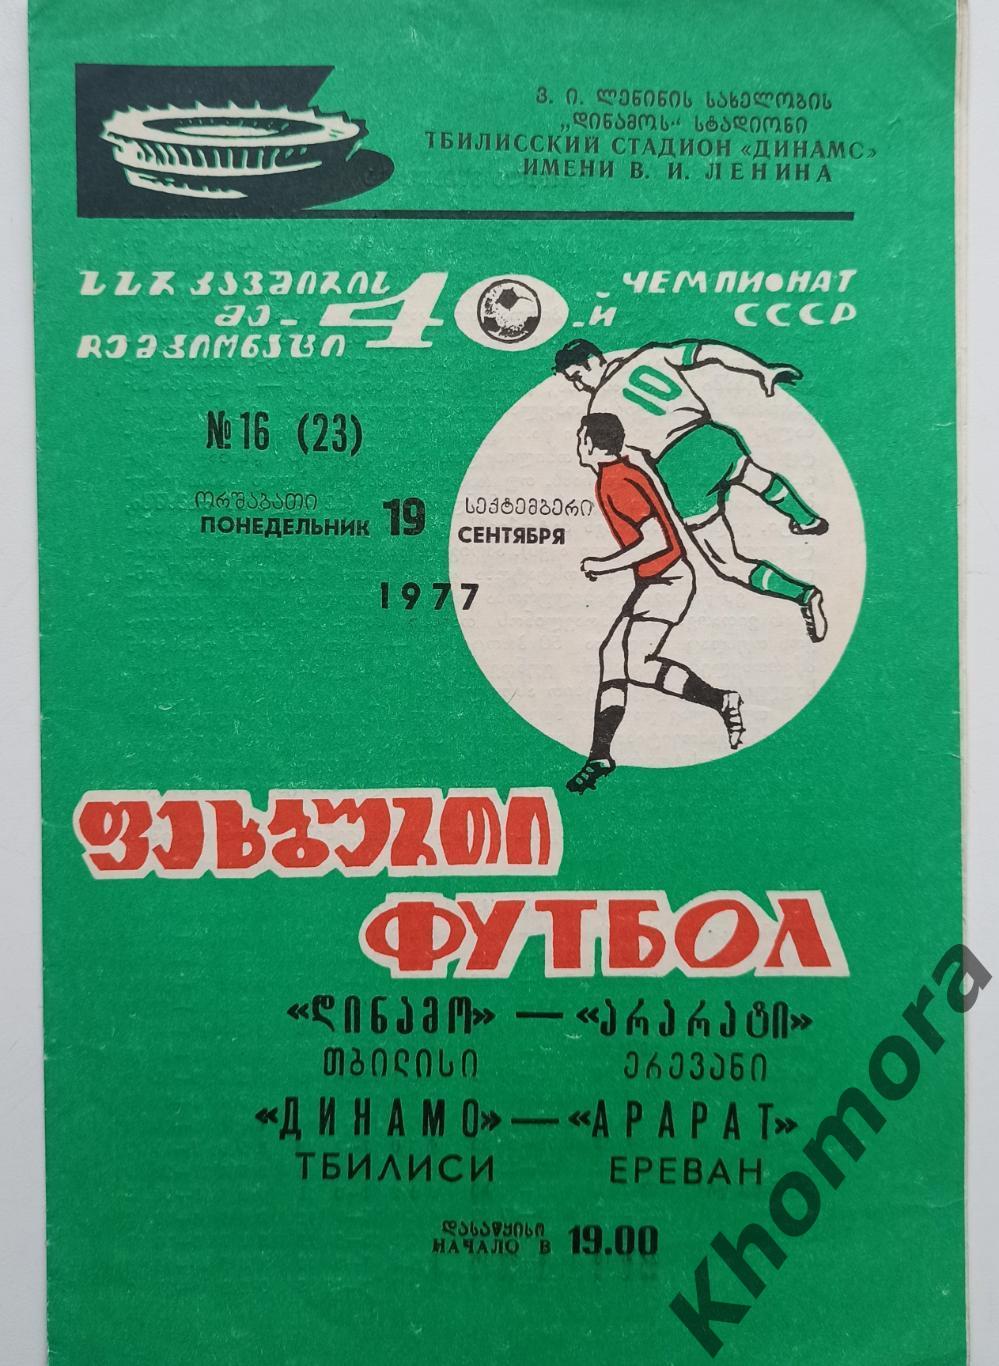 Динамо (Тбилиси) - Арарат (Ереван) 19.09.1977 - официальная программа